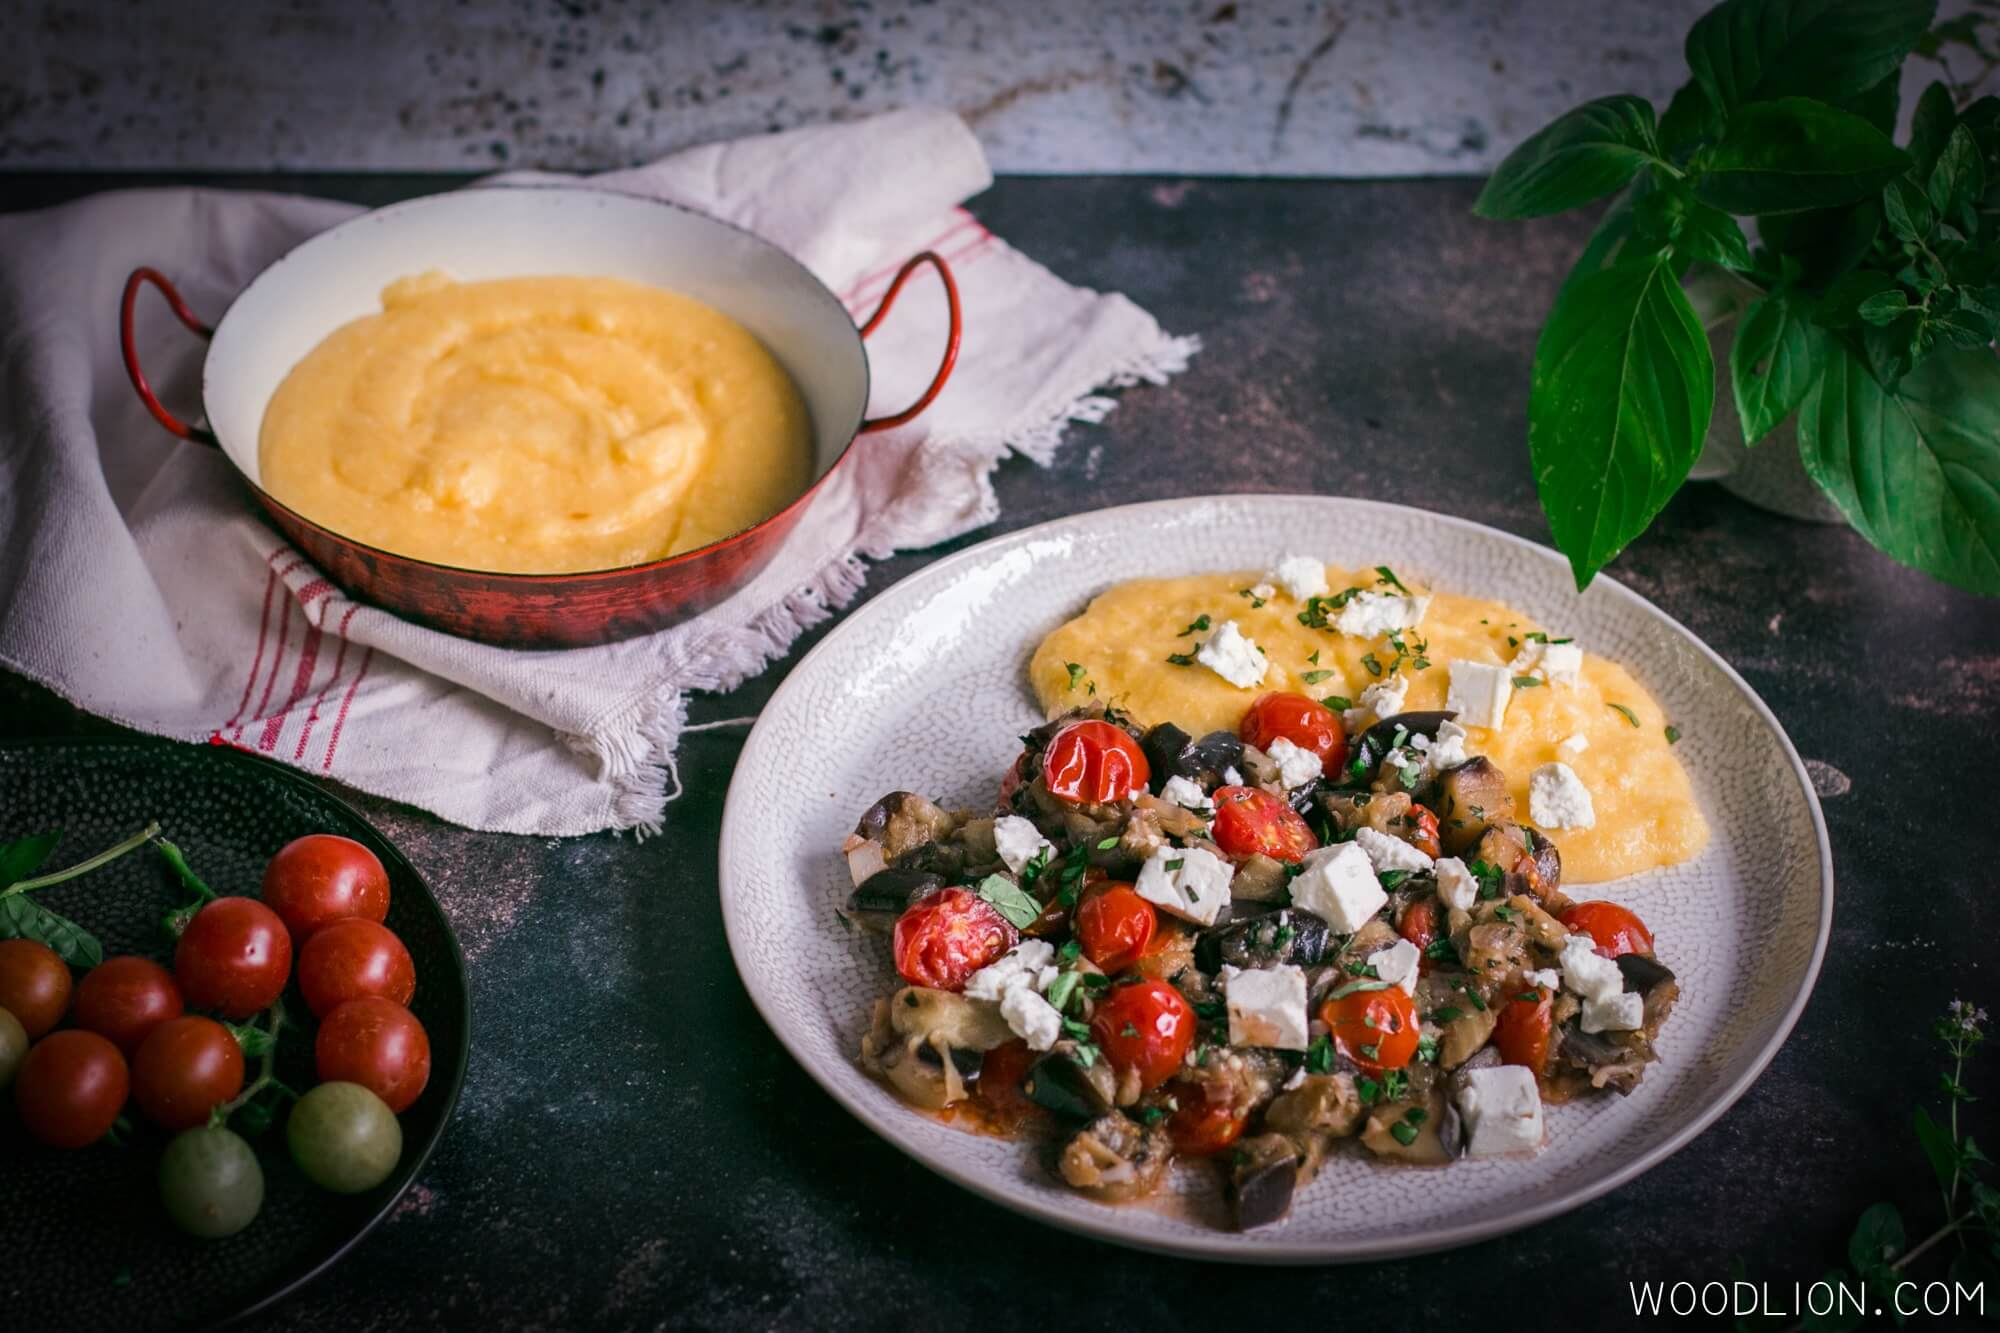 Woodlion Gastro Blog#7 - Próbáld ki a mediterrán padlizsánragut krémes polentával! Gluténmentes diétában is tökéletes!